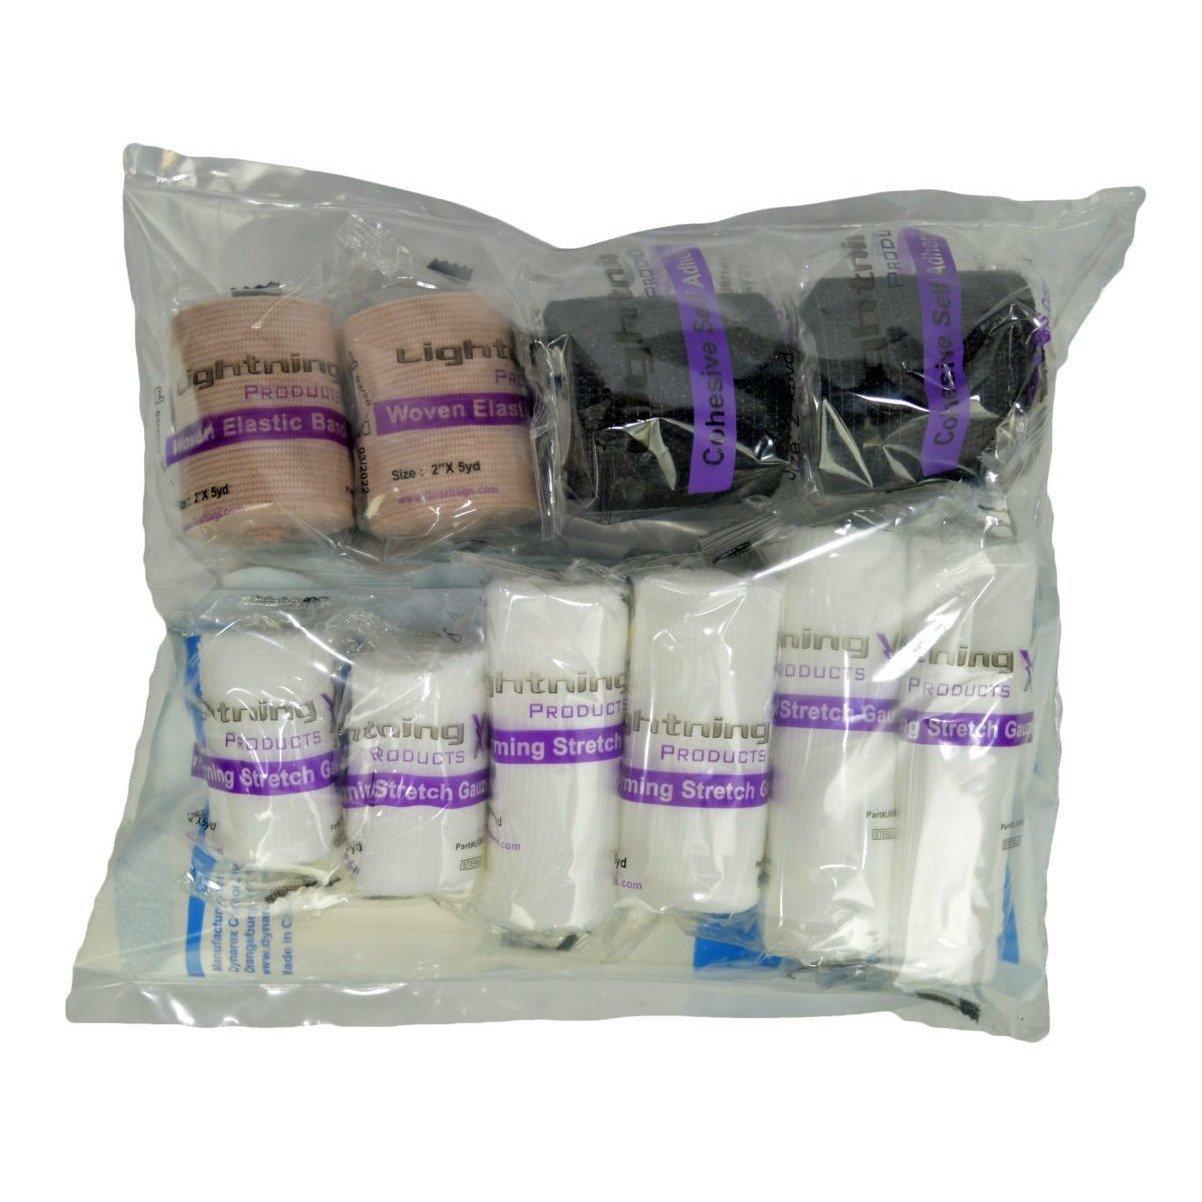 Bandage Fill Kit - Vendor